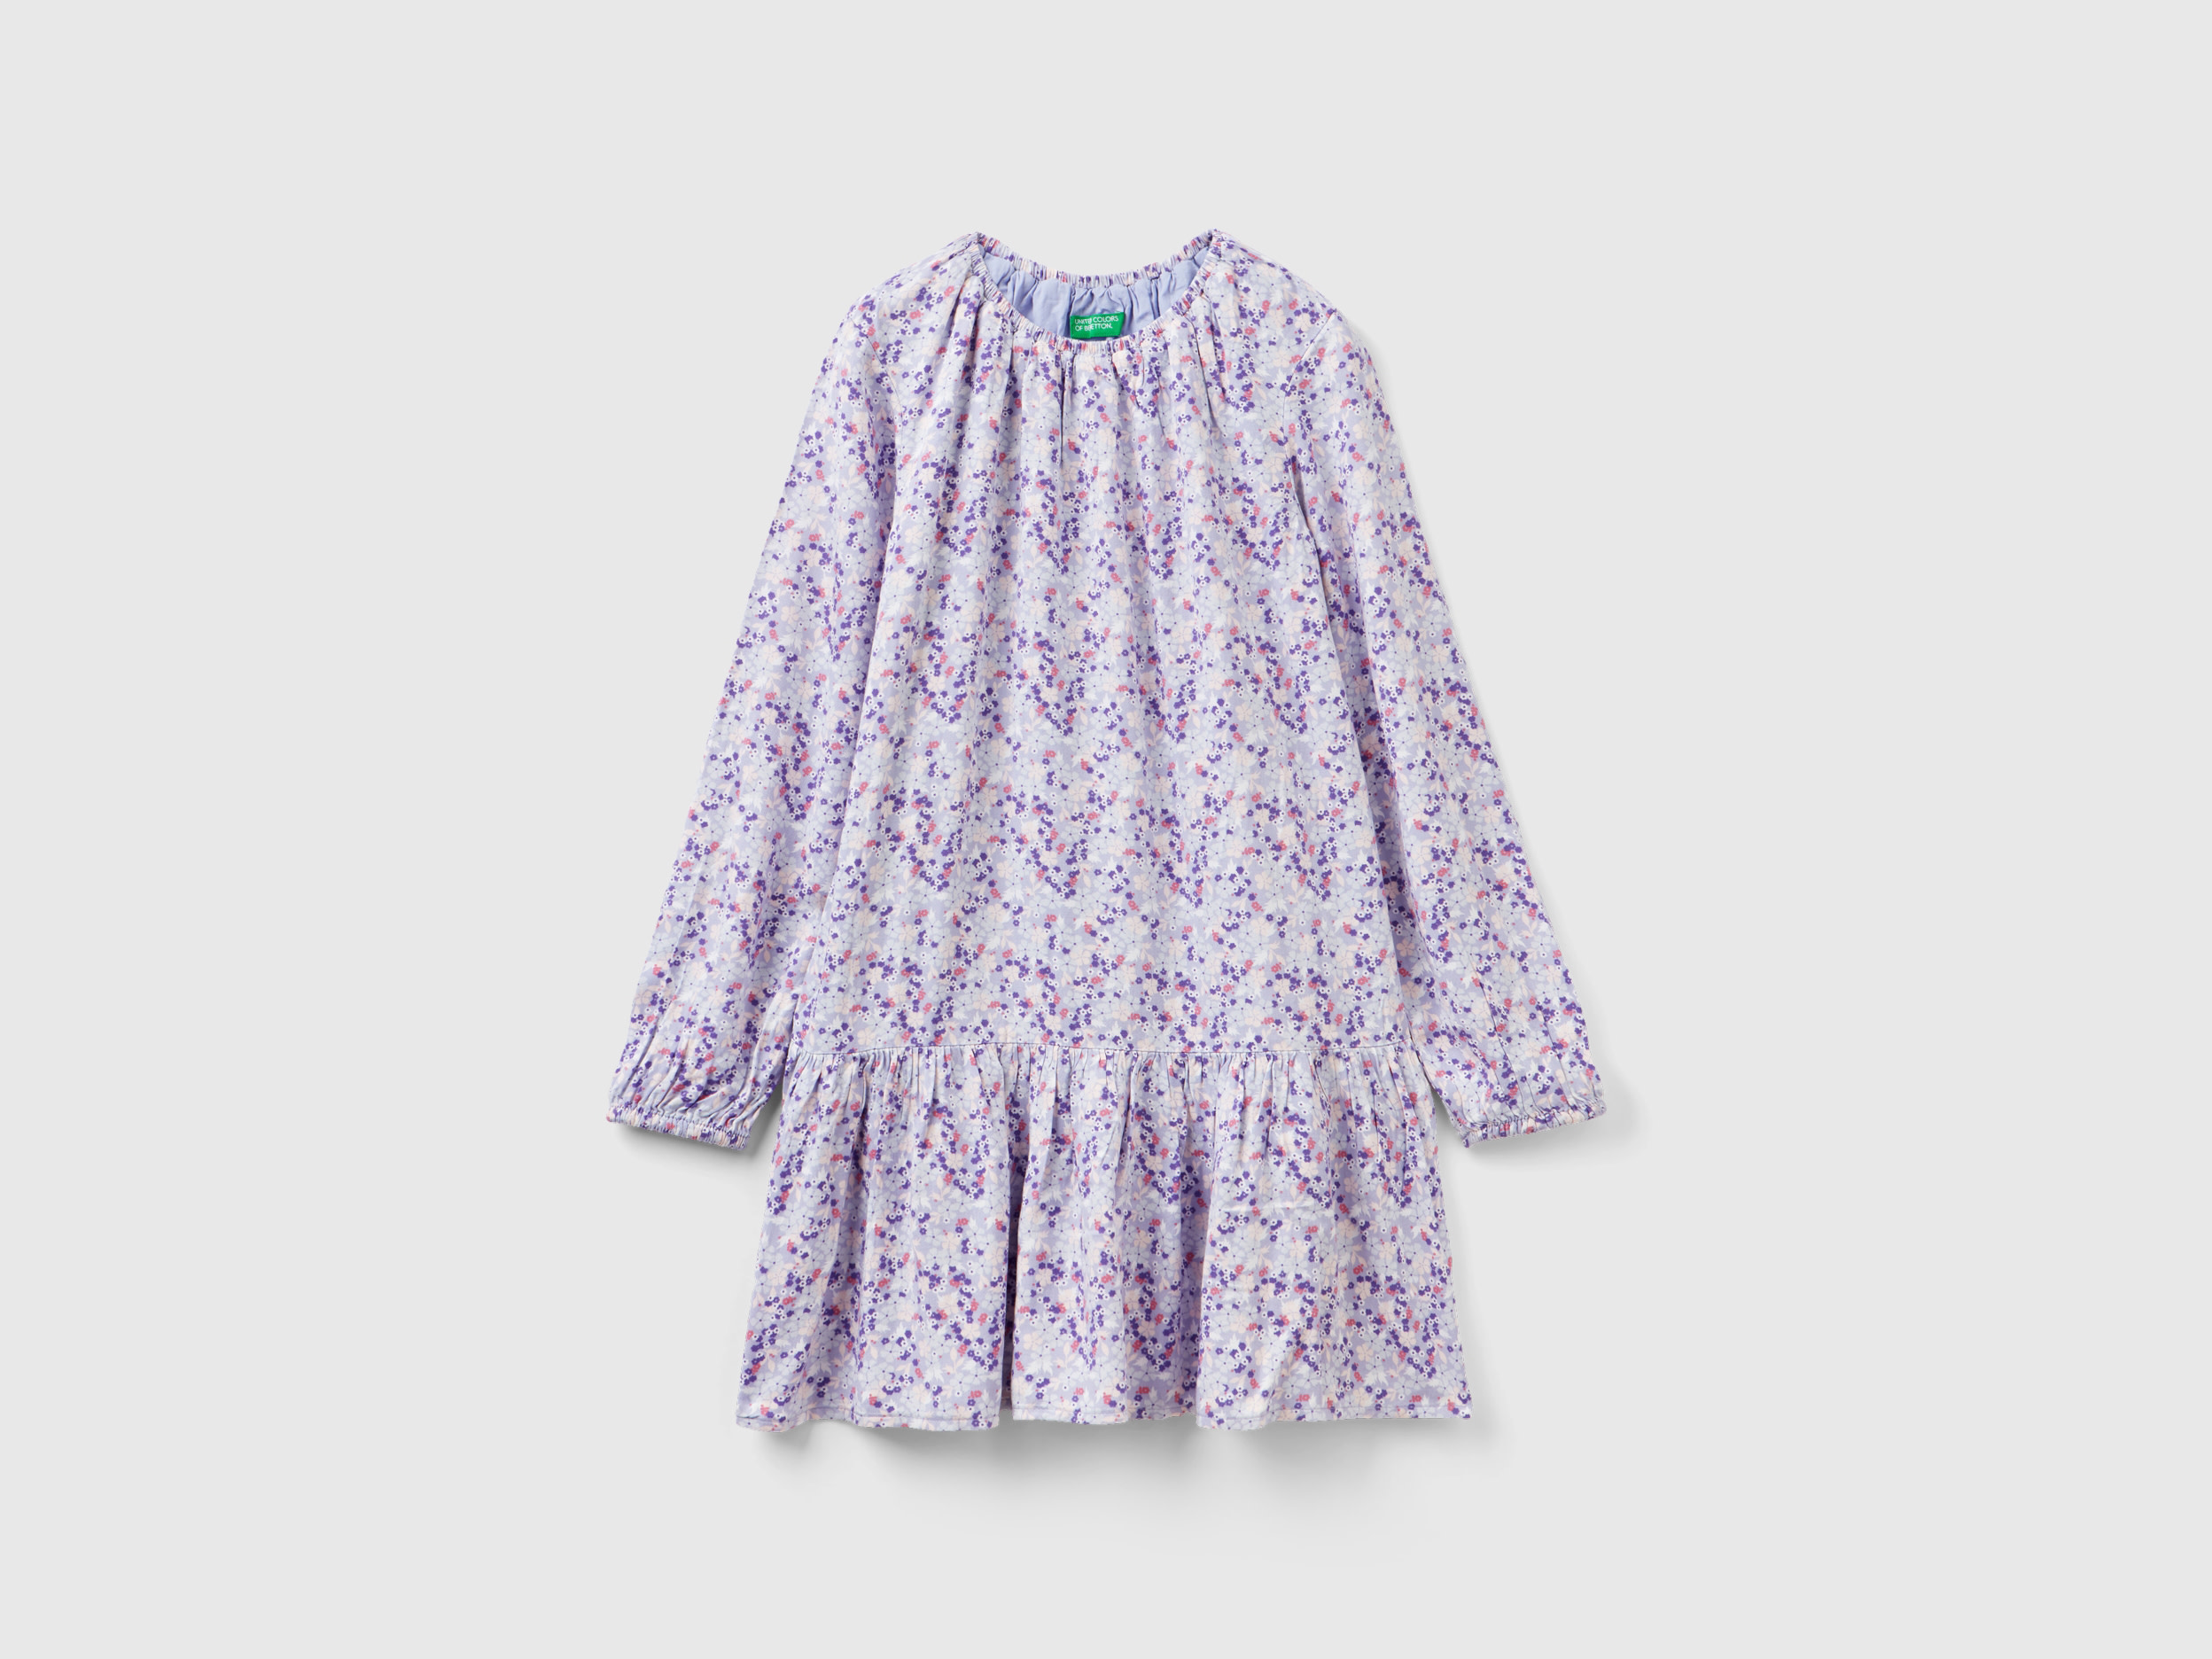 Benetton, Flowy Floral Dress, size L, Multi-color, Kids